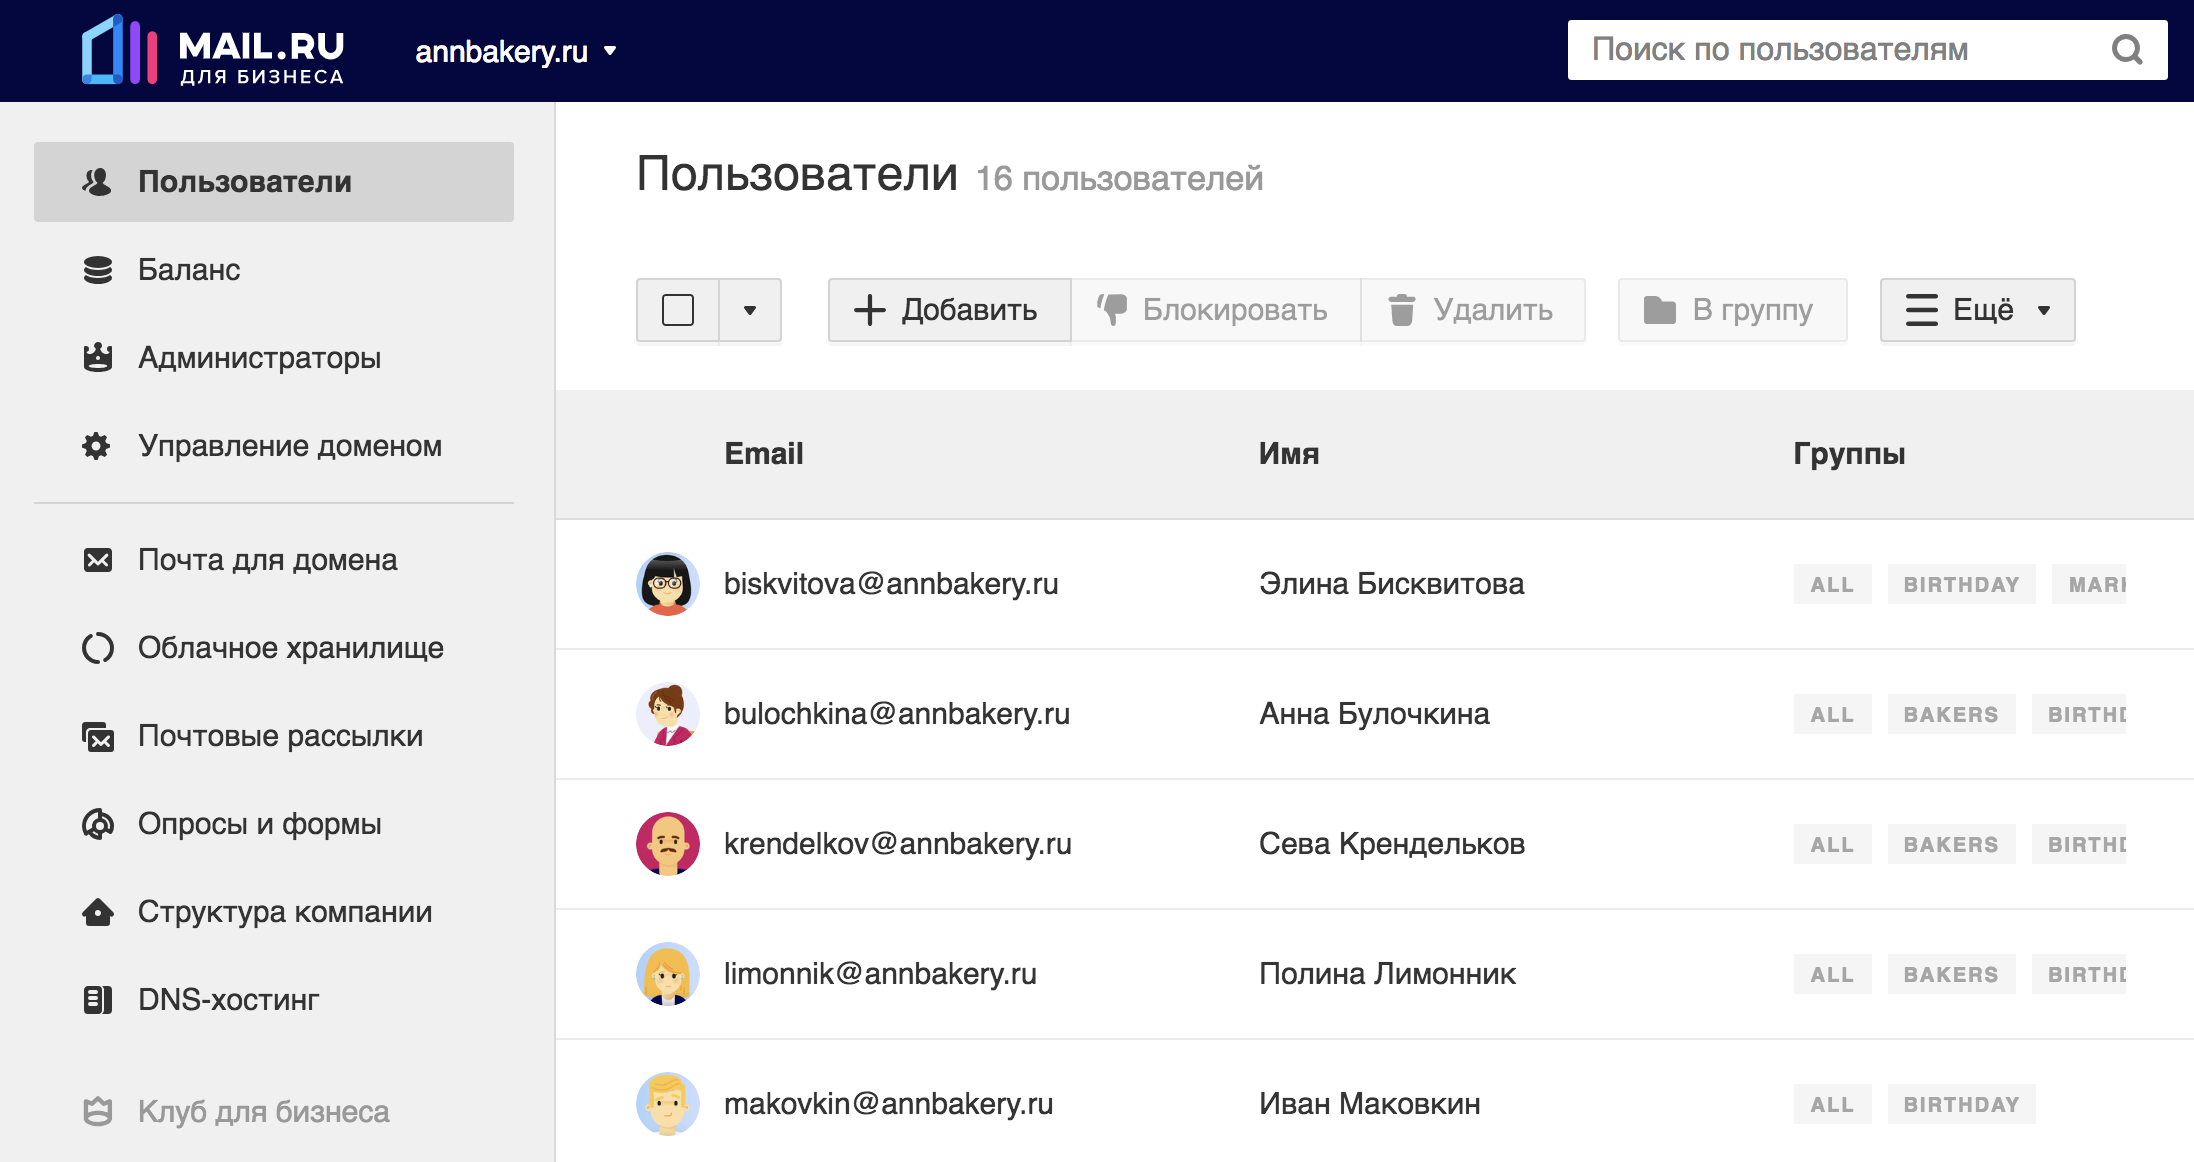 Стс программа передач на сегодня майл ру. Бизнес почта. Mail.ru для бизнеса. Майл бизнес. Пример бизнес почты.